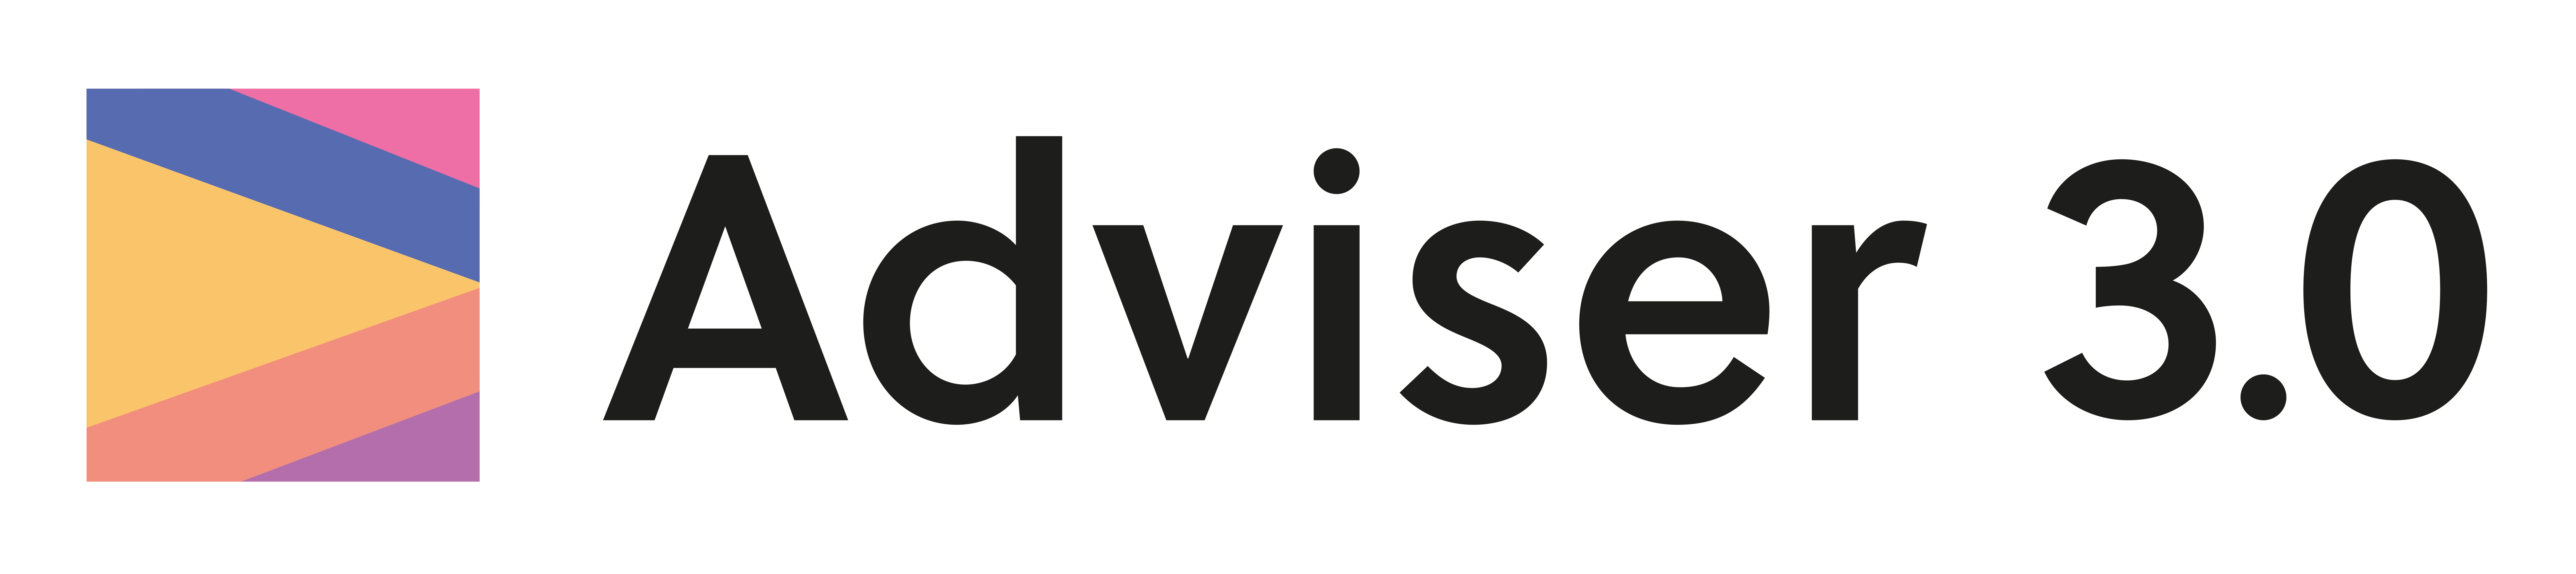 Adviser 3.0 Logo-01